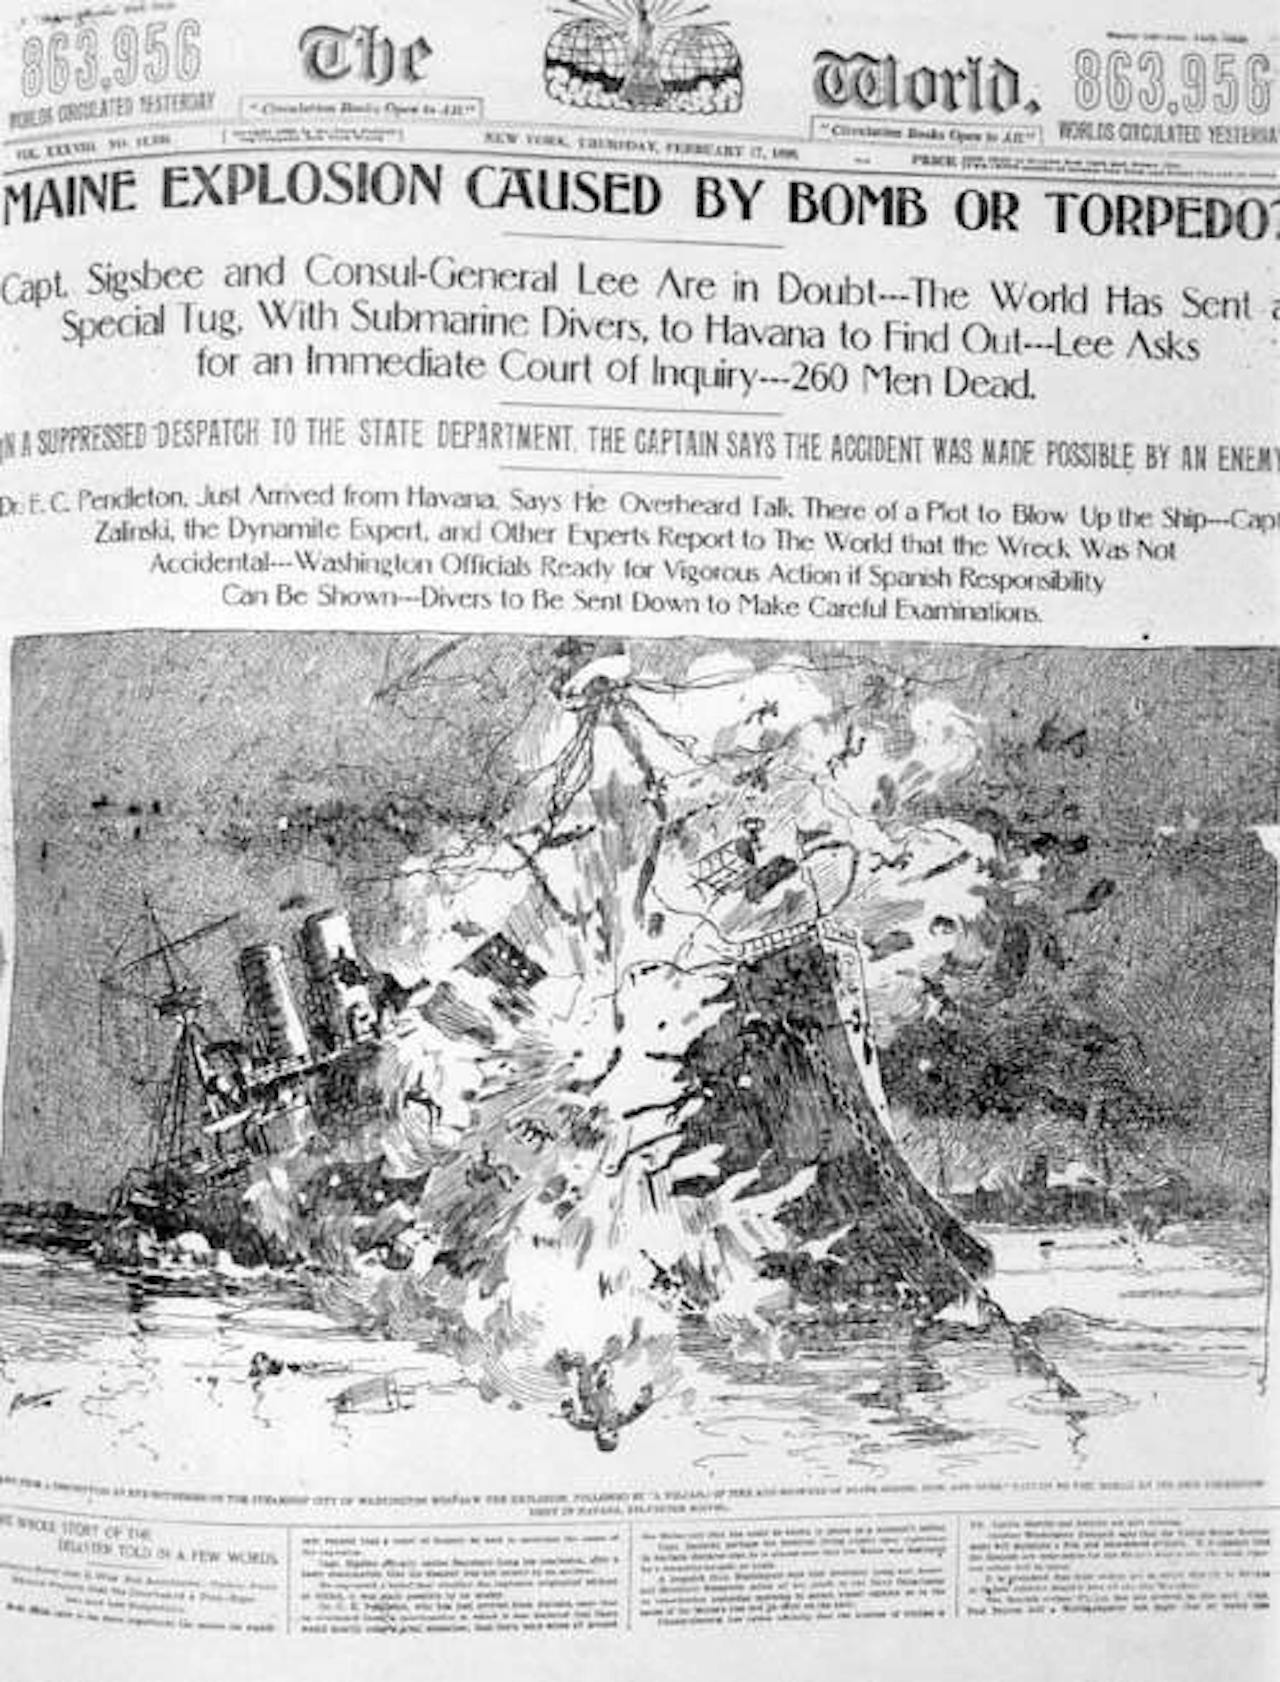 Een krantenartikel uit de Pulitzer’s krant the New York World tijdens de Spaans-Amerikaanse oorlog (17 februari 1898).